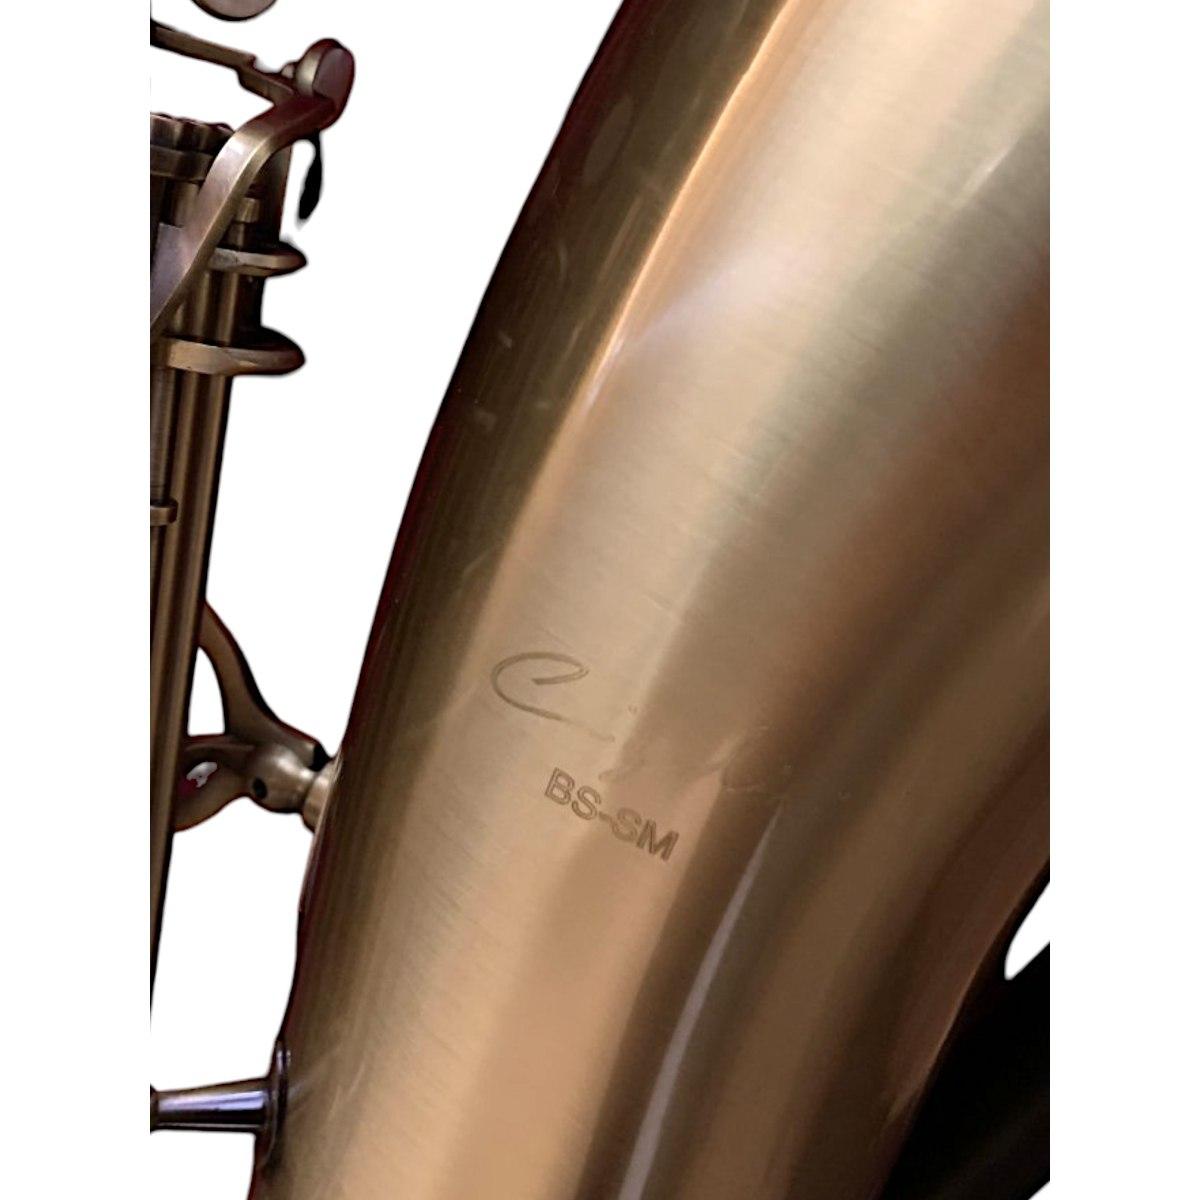 Cigalini sax baritono serie smart brushed brass